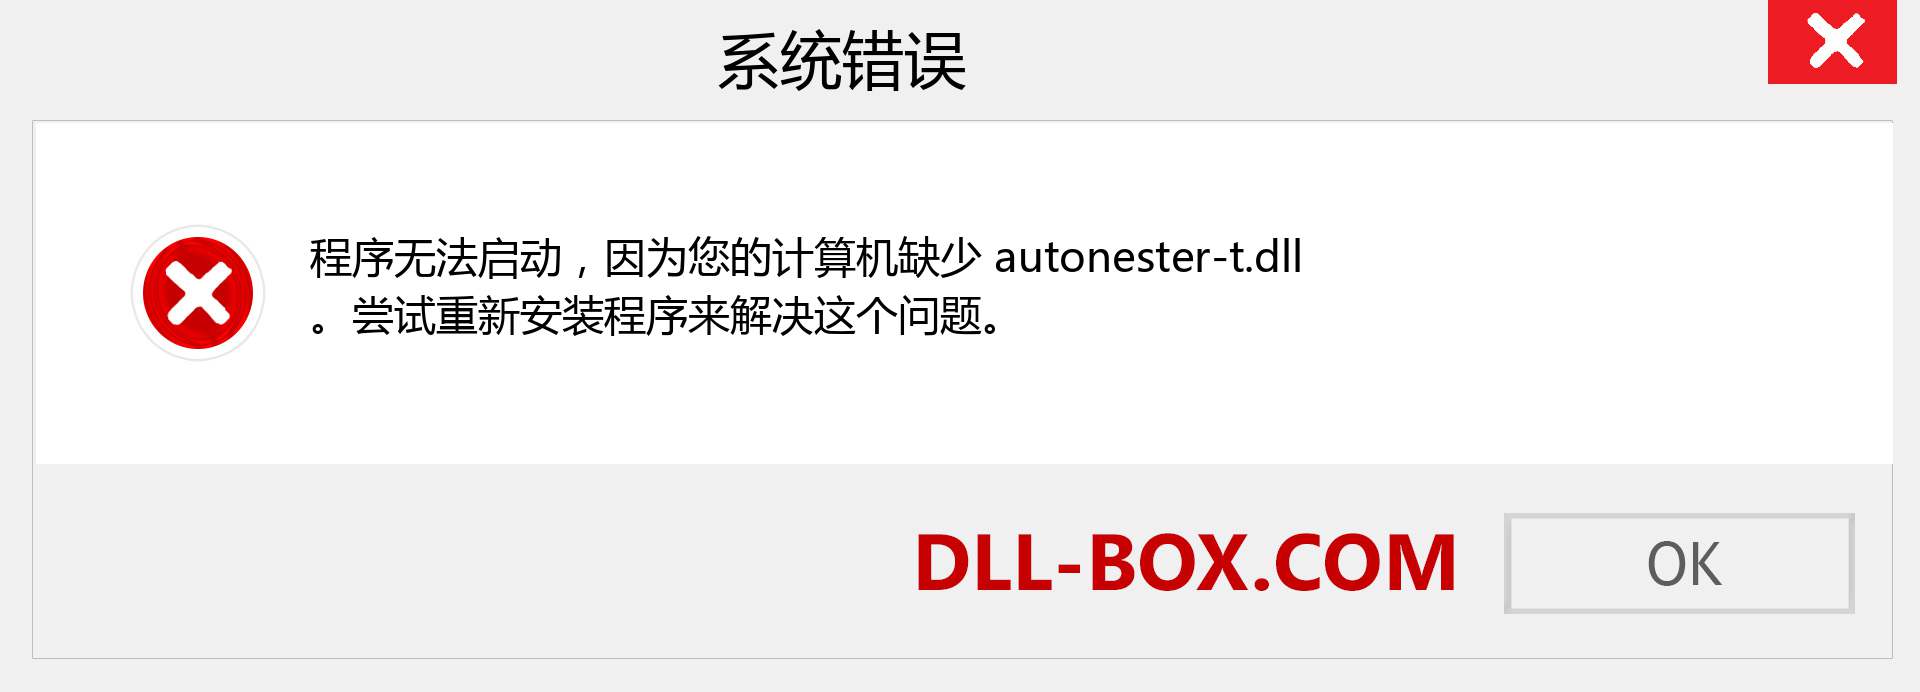 autonester-t.dll 文件丢失？。 适用于 Windows 7、8、10 的下载 - 修复 Windows、照片、图像上的 autonester-t dll 丢失错误